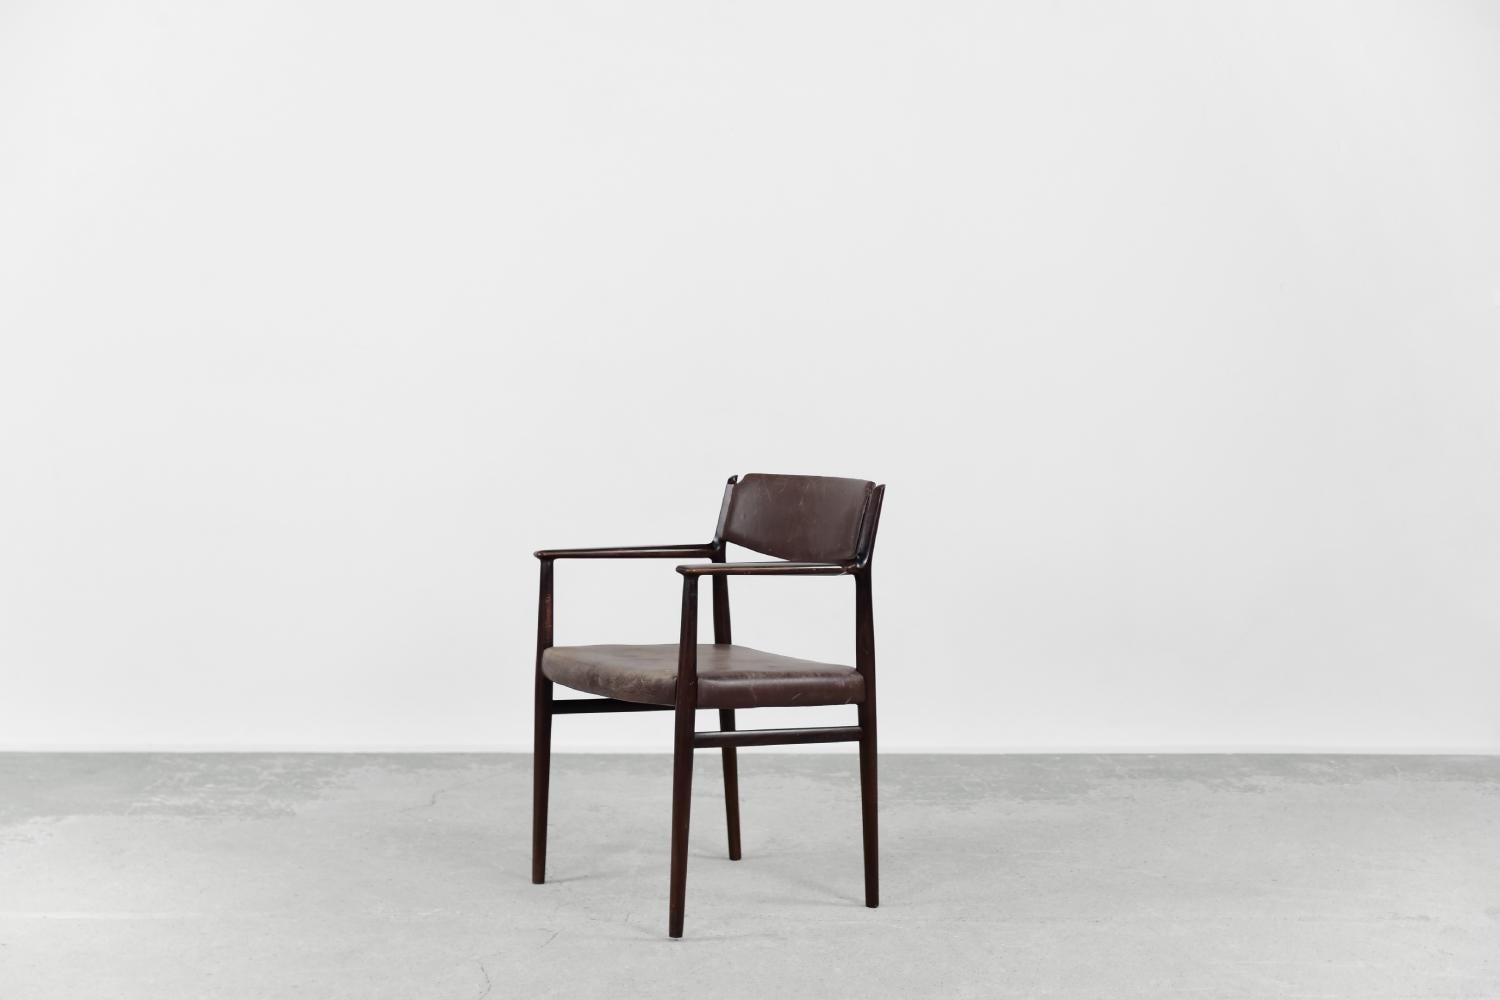 Cette chaise moderniste a été conçue par le célèbre designer danois Arne Vodder dans les années 1960. Le cadre de la chaise, de forme organique, est en bois massif de couleur marron noble. L'assise et le dossier sont recouverts de cuir naturel